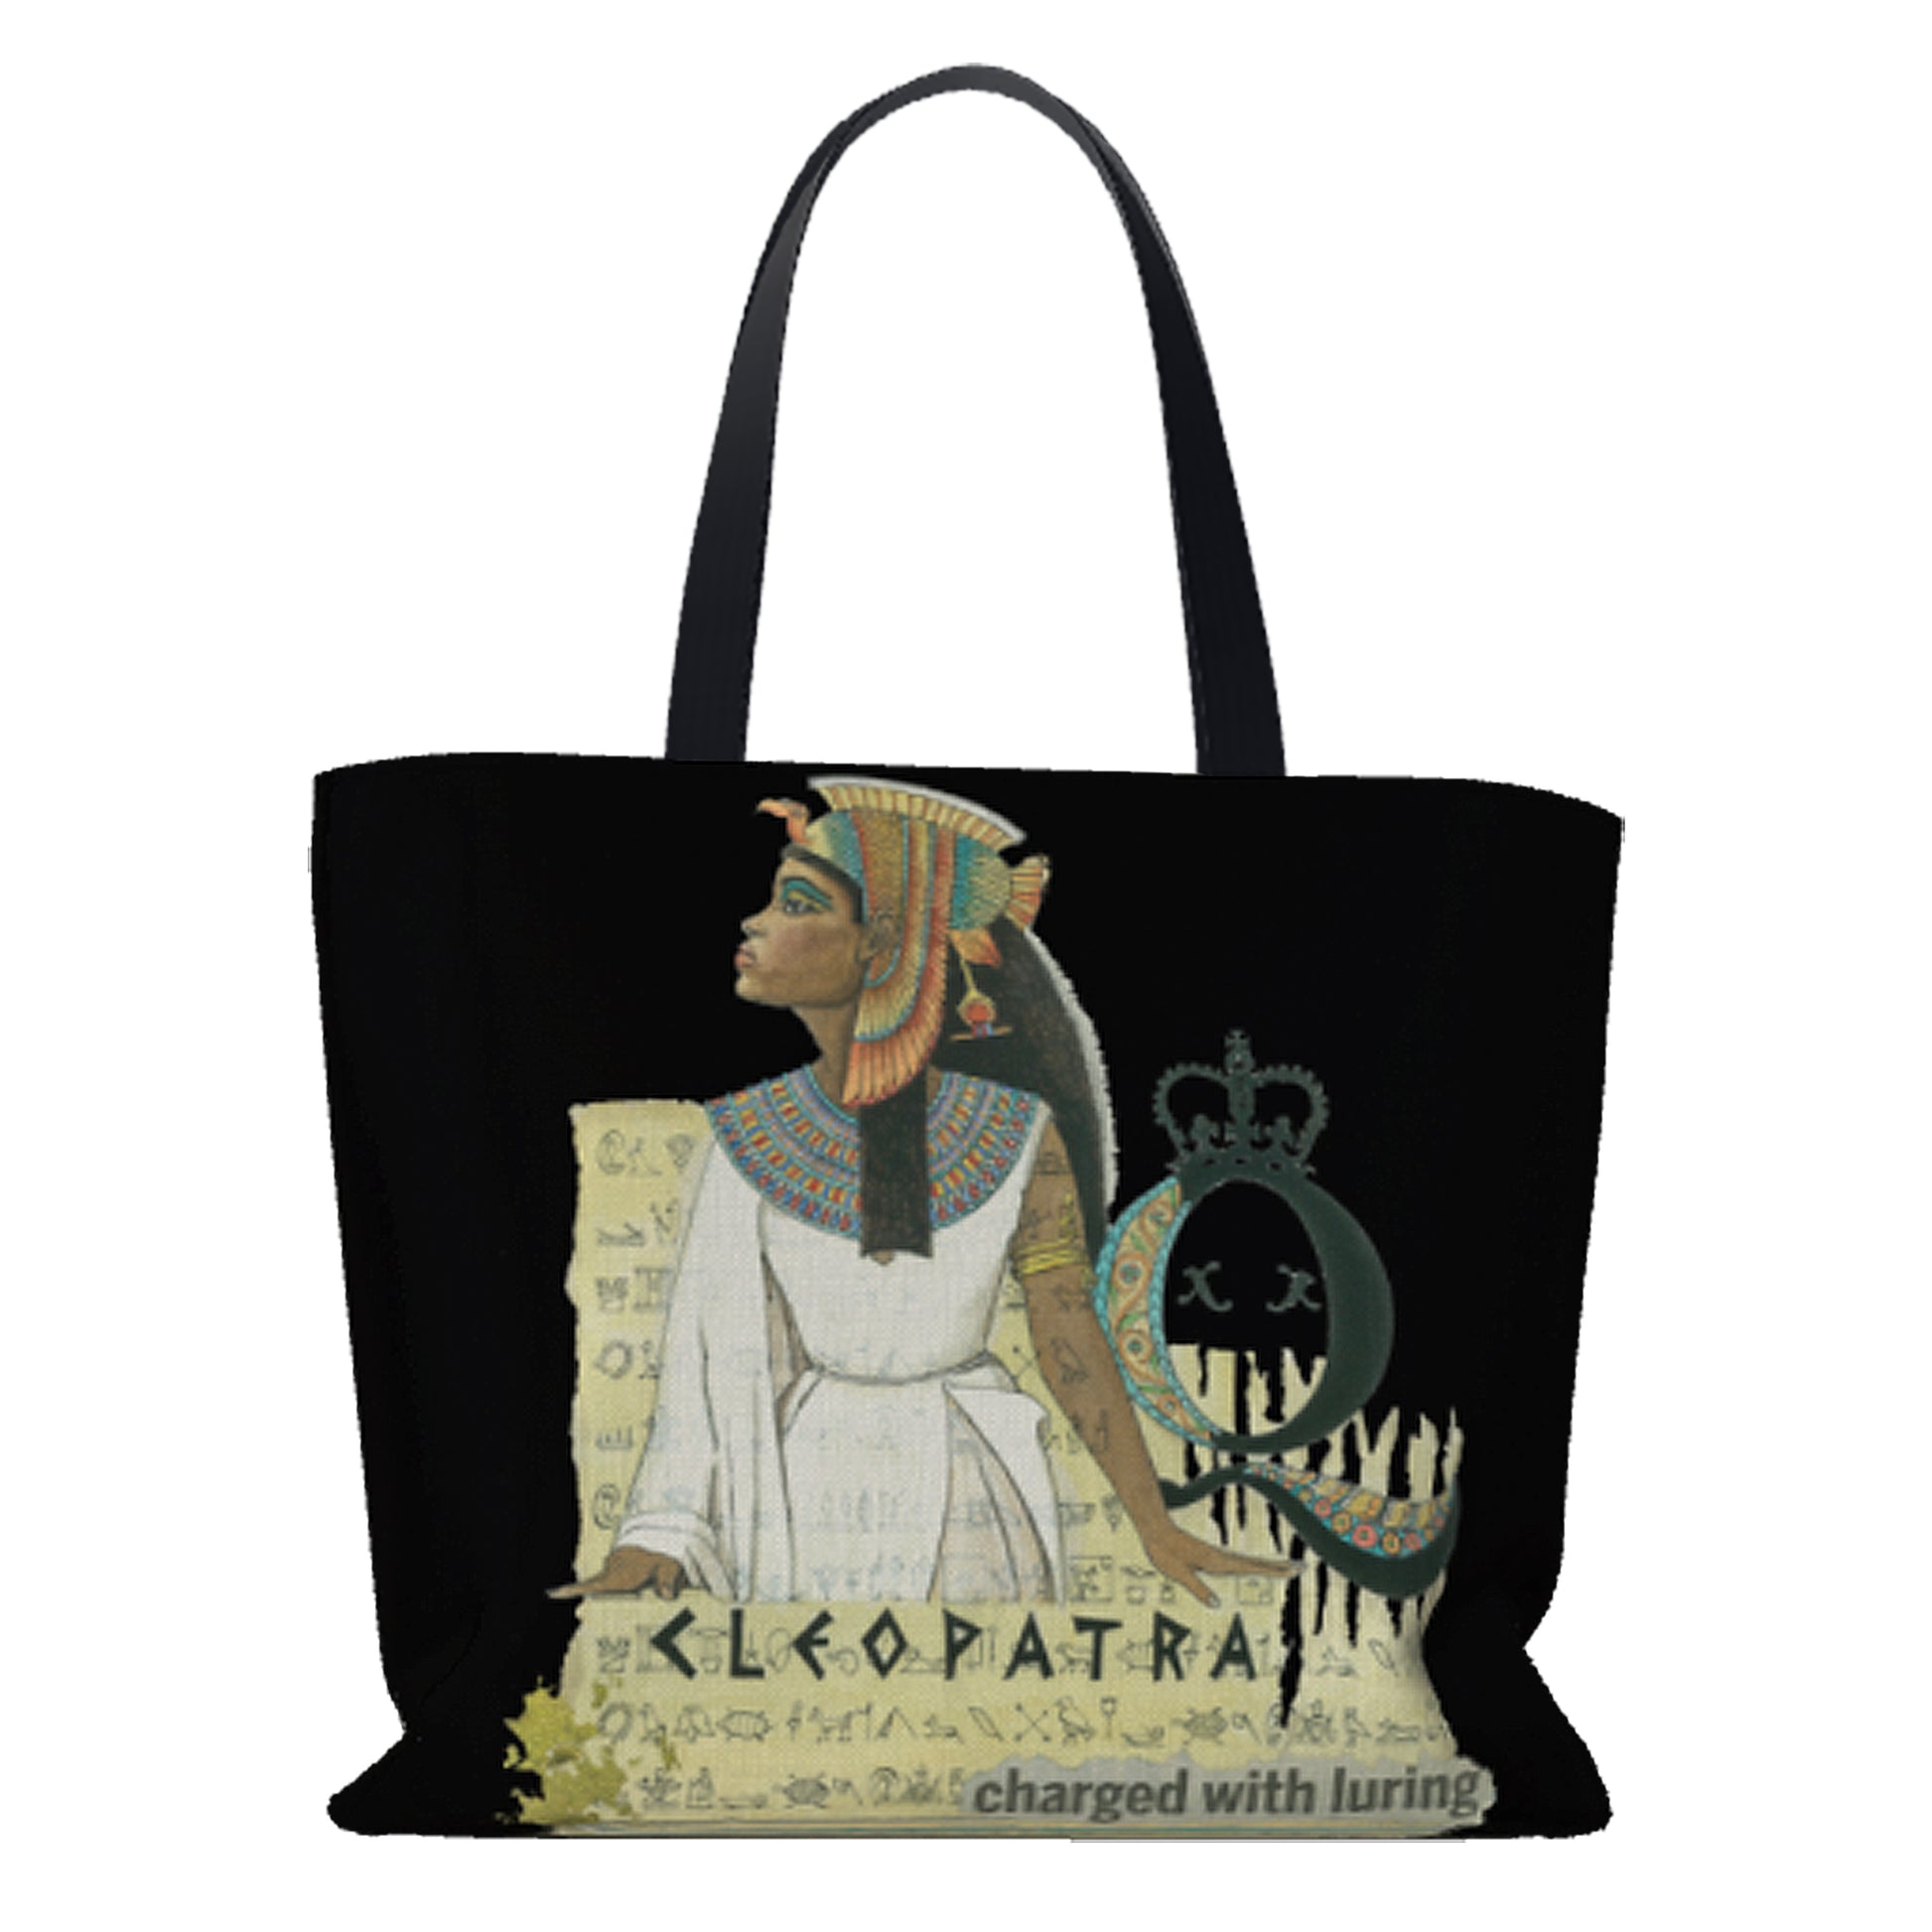 Cleopatra Oversize Tote Bag - Dead Queens